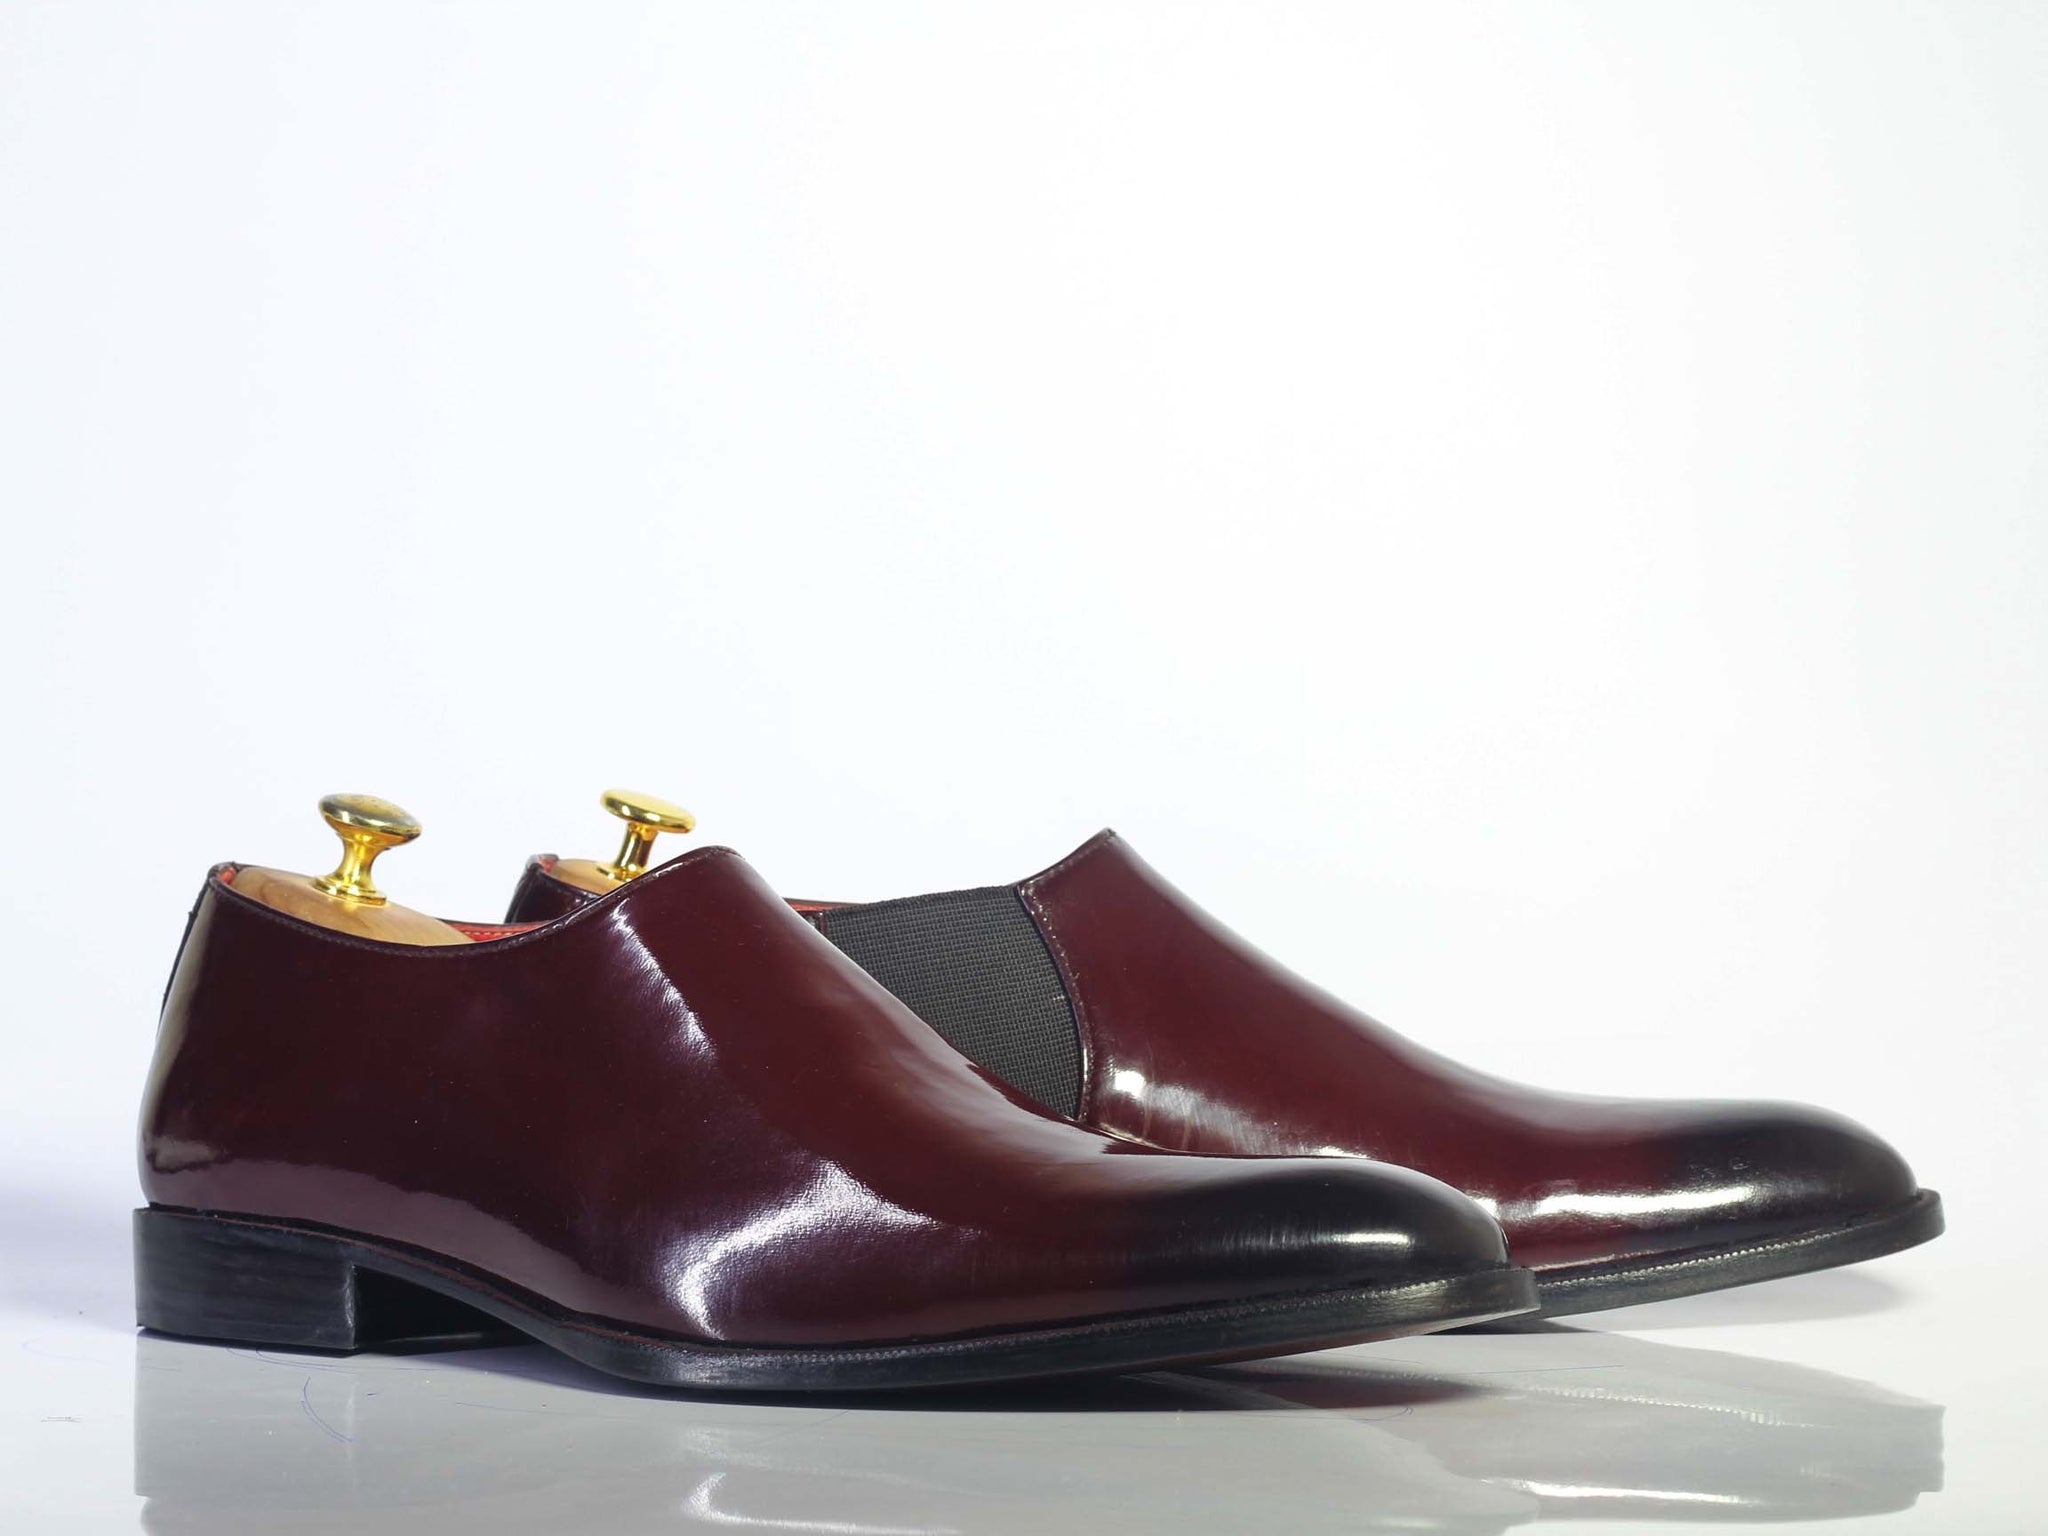 Handmade Men's Burgundy Chelsea Style Leather Slip On Shoes, Men Desig ...